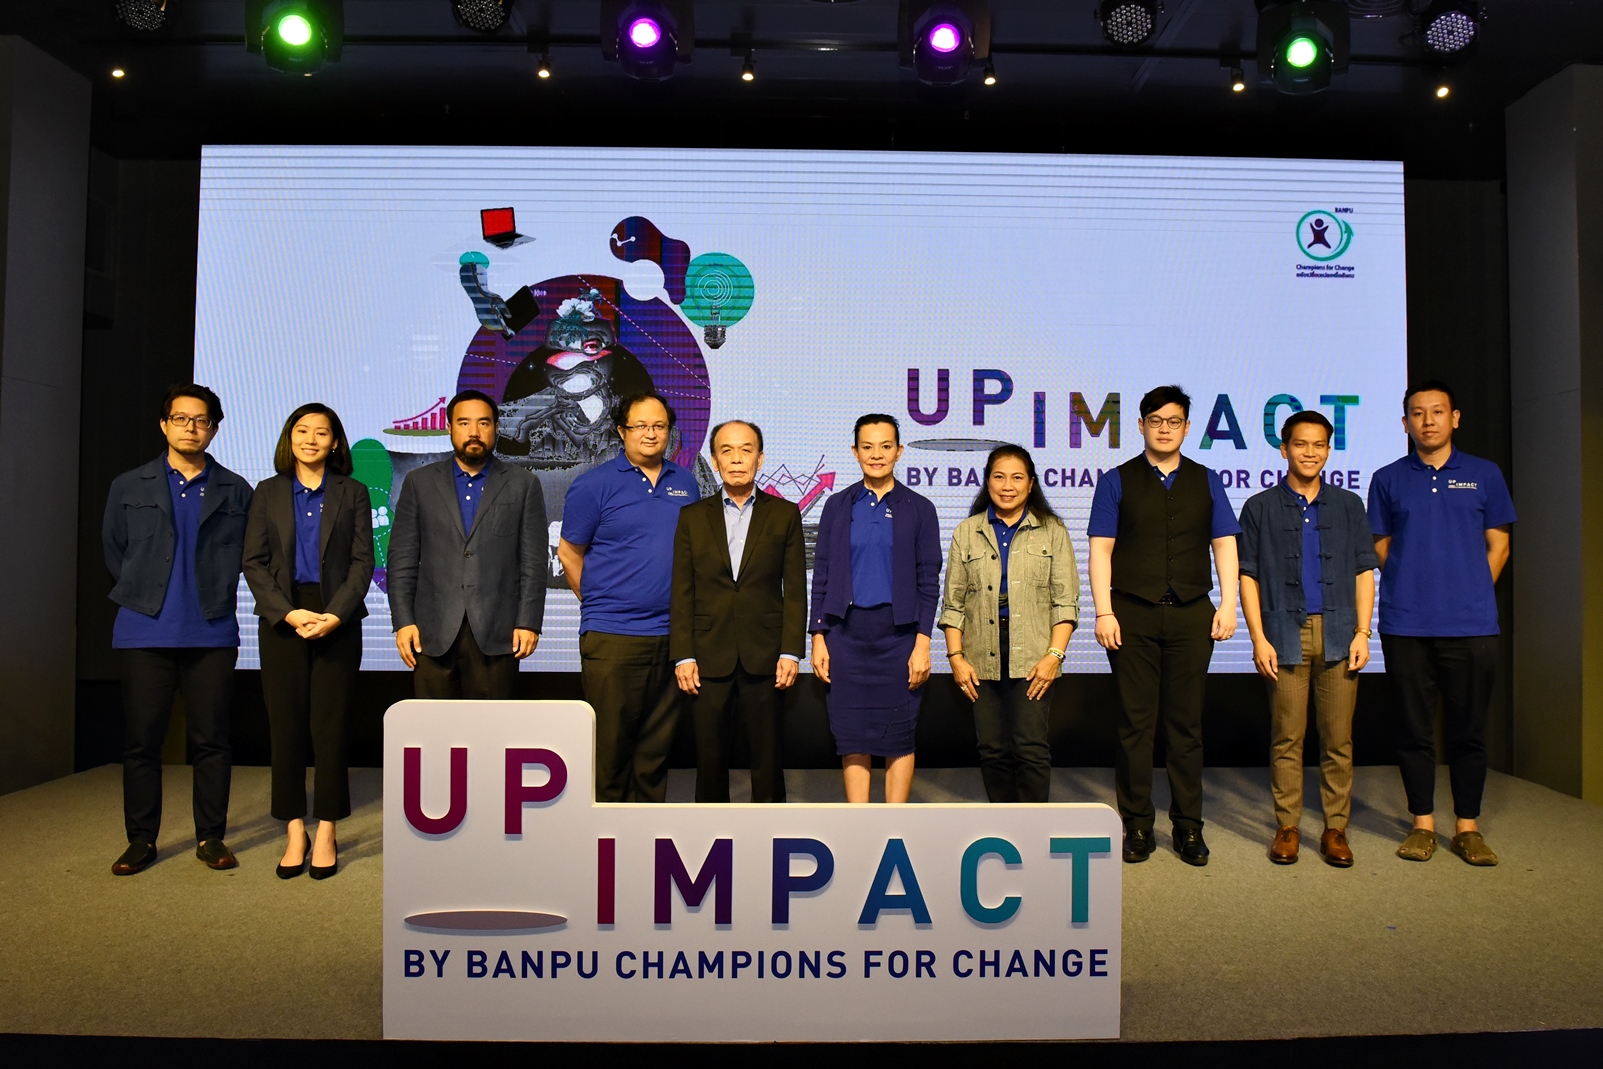 บ้านปูฯ เดินหน้าช่วยผู้ประกอบการสู้วิกฤติเศรษฐกิจ จัดกิจกรรม UpImpact by Banpu Champions for Change -